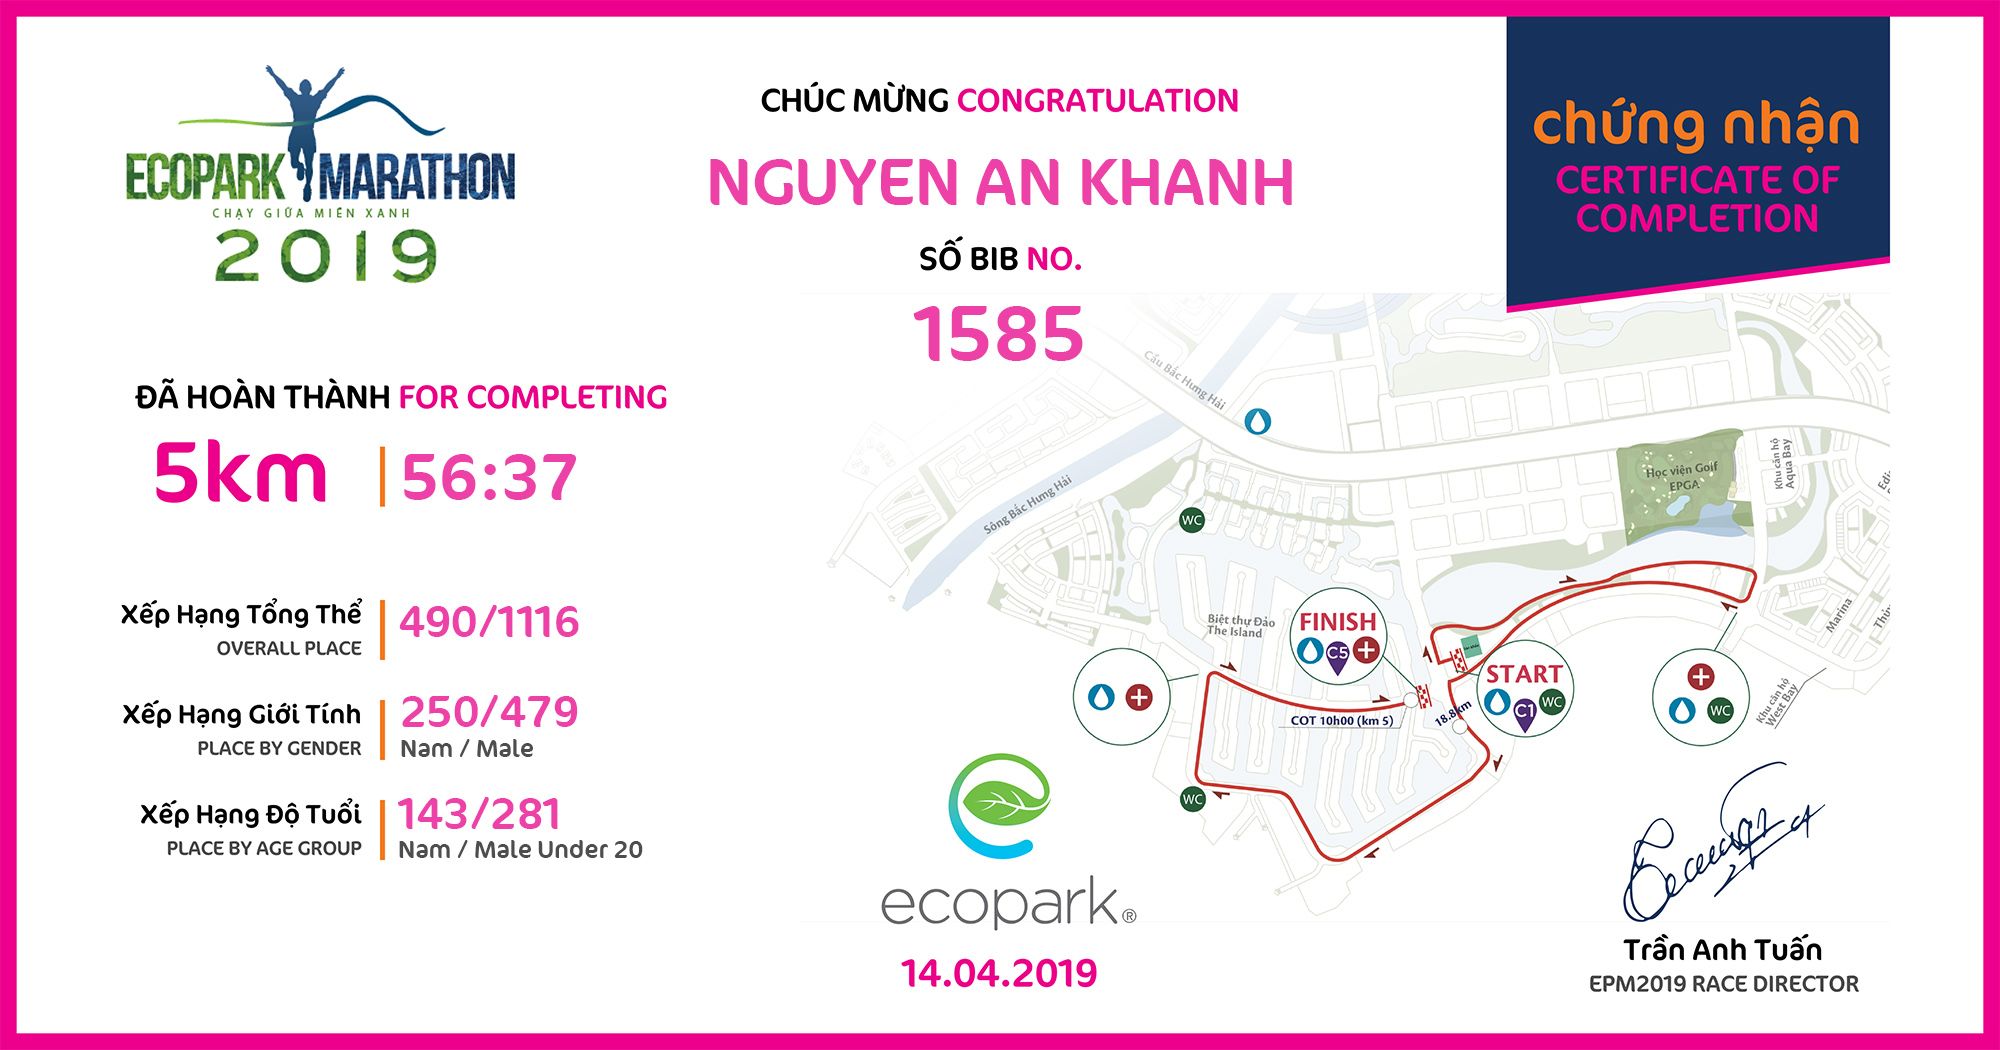 1585 - Nguyen An Khanh